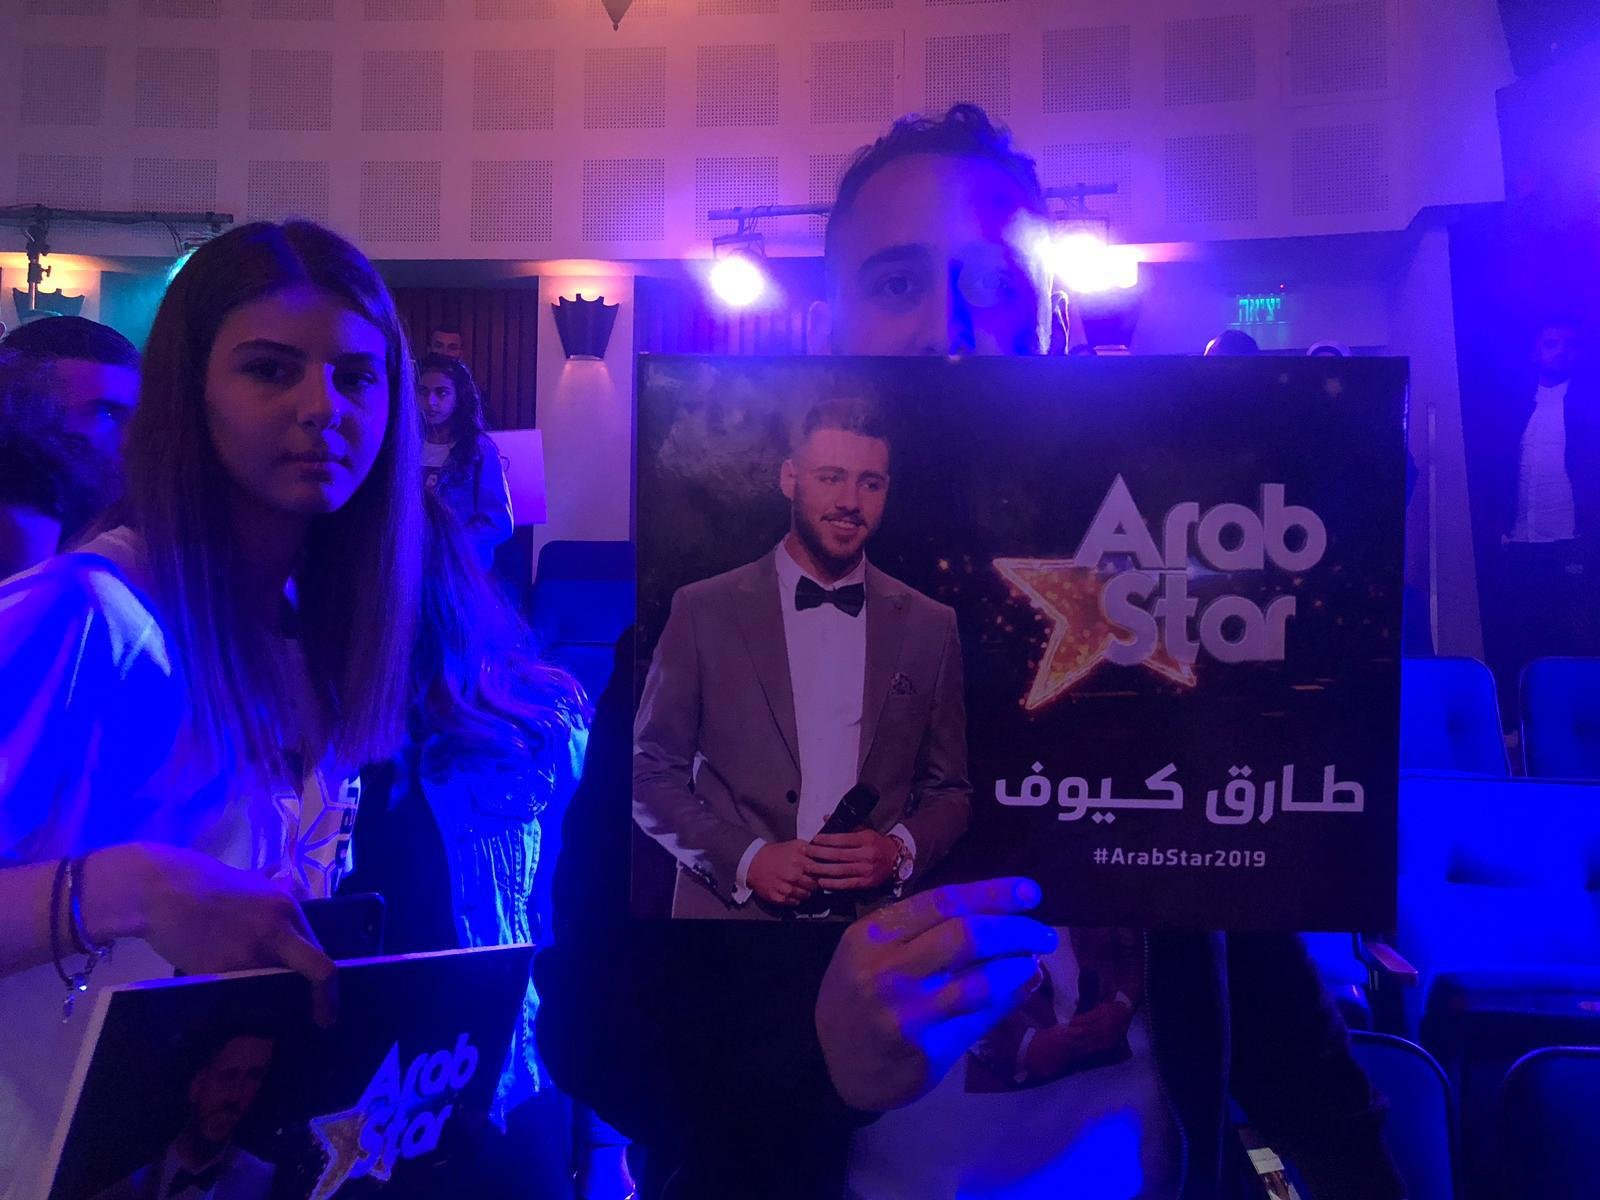 تتويج طارق كيّوف في لقب "عرب ستار" للعام 2019 -0